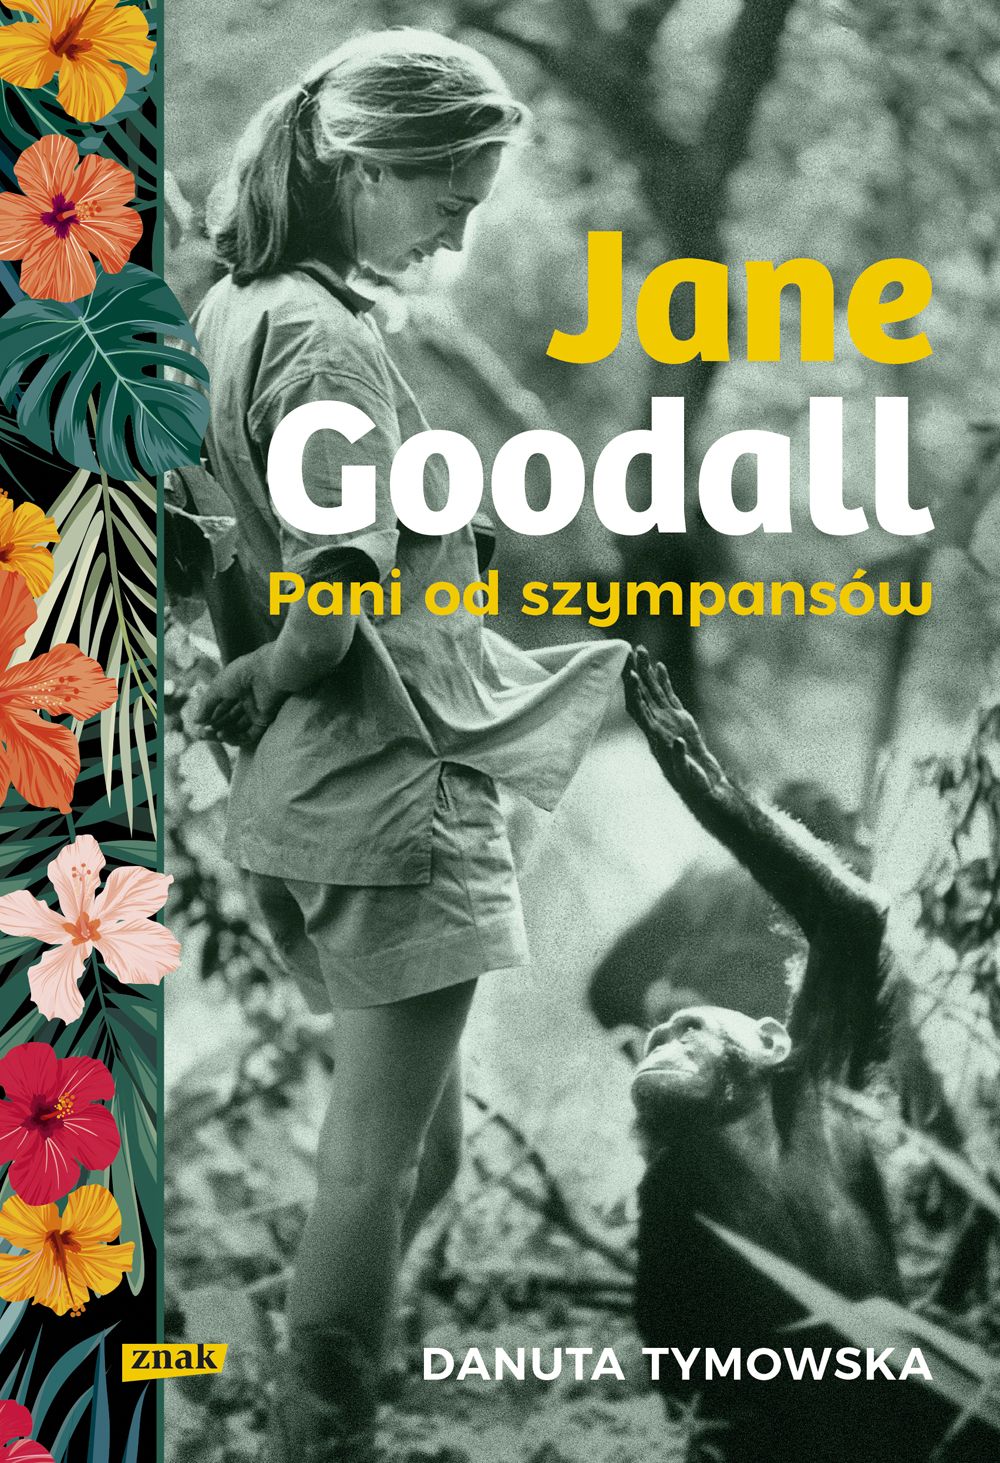 Danuta Tymowska "Jane Goodall. Pani od szympansów", Wydawnictwo Znak
